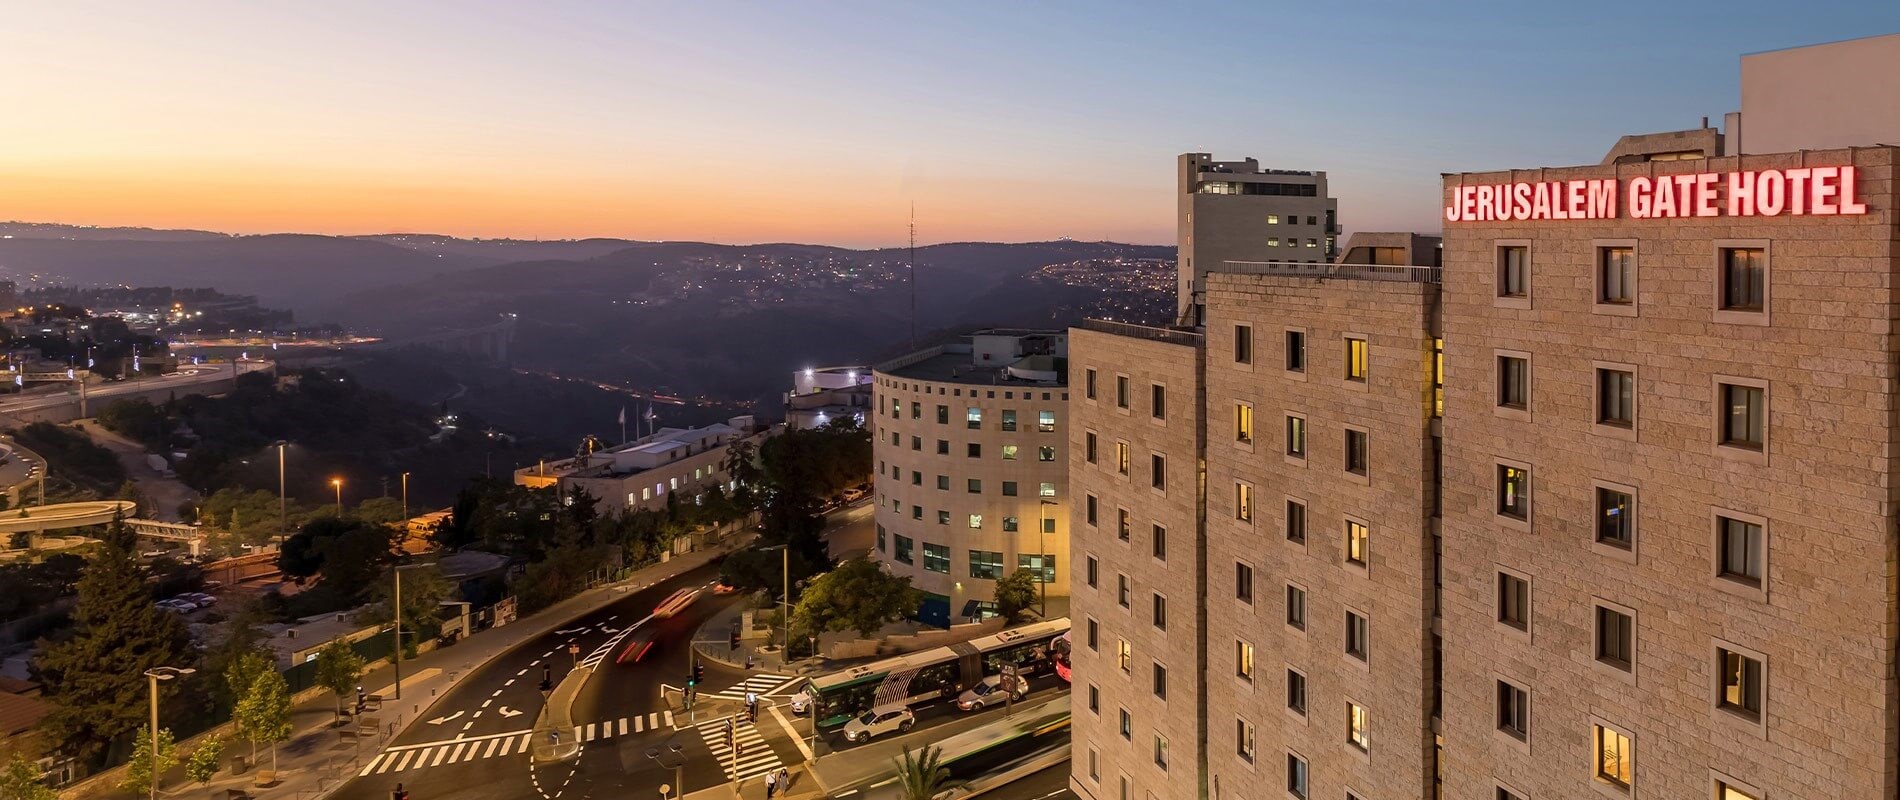 מלון שערי ירושלים - תקנון המלון